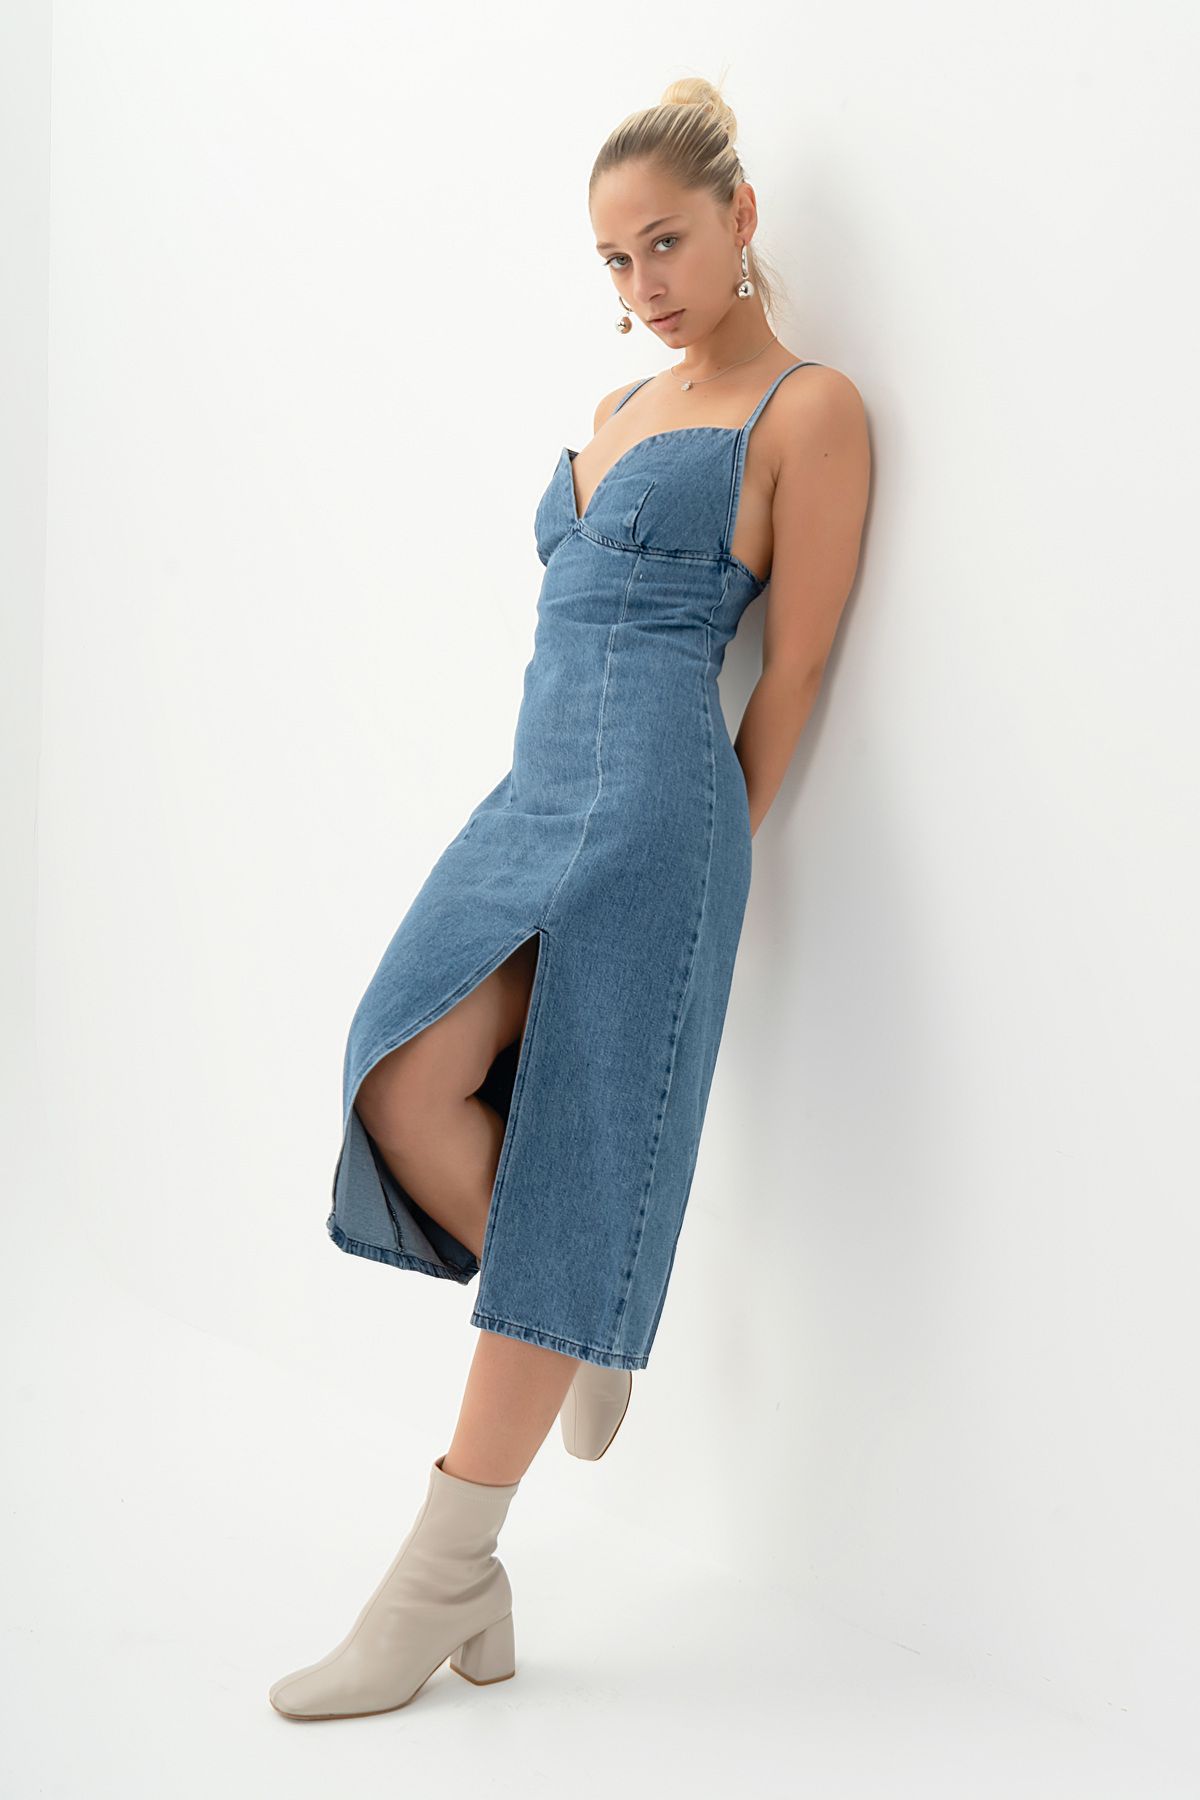 its basic Kadın Mavi Renk Yumuşak Kumaş Yırtmaçlı Askılı Uzun Denim Elbise